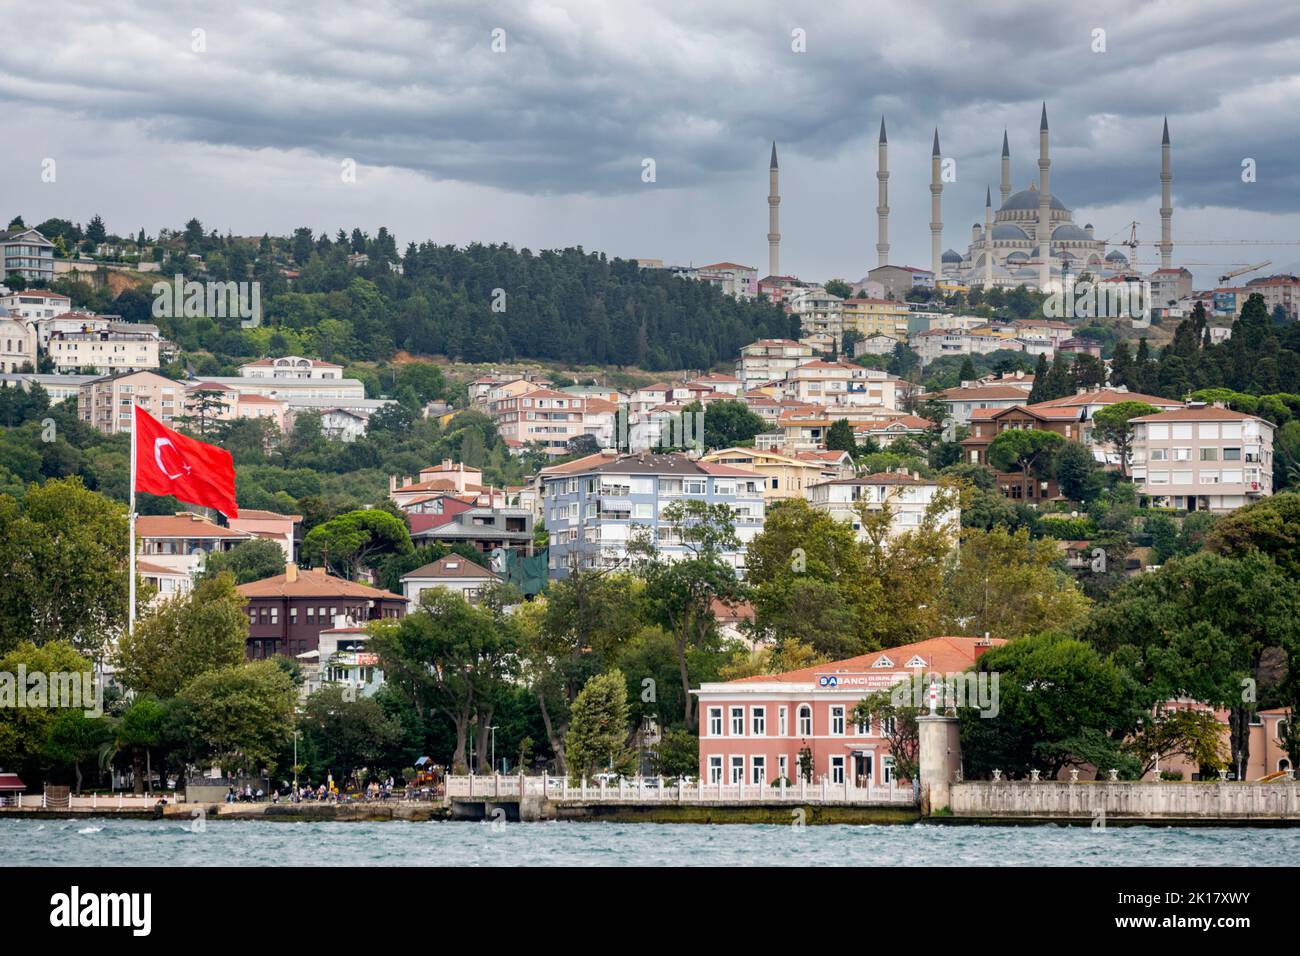 Türkei, Istanbul, Cengelköy, Blick vom Bosporus zur Çamlıca-Moschee Stock Photo